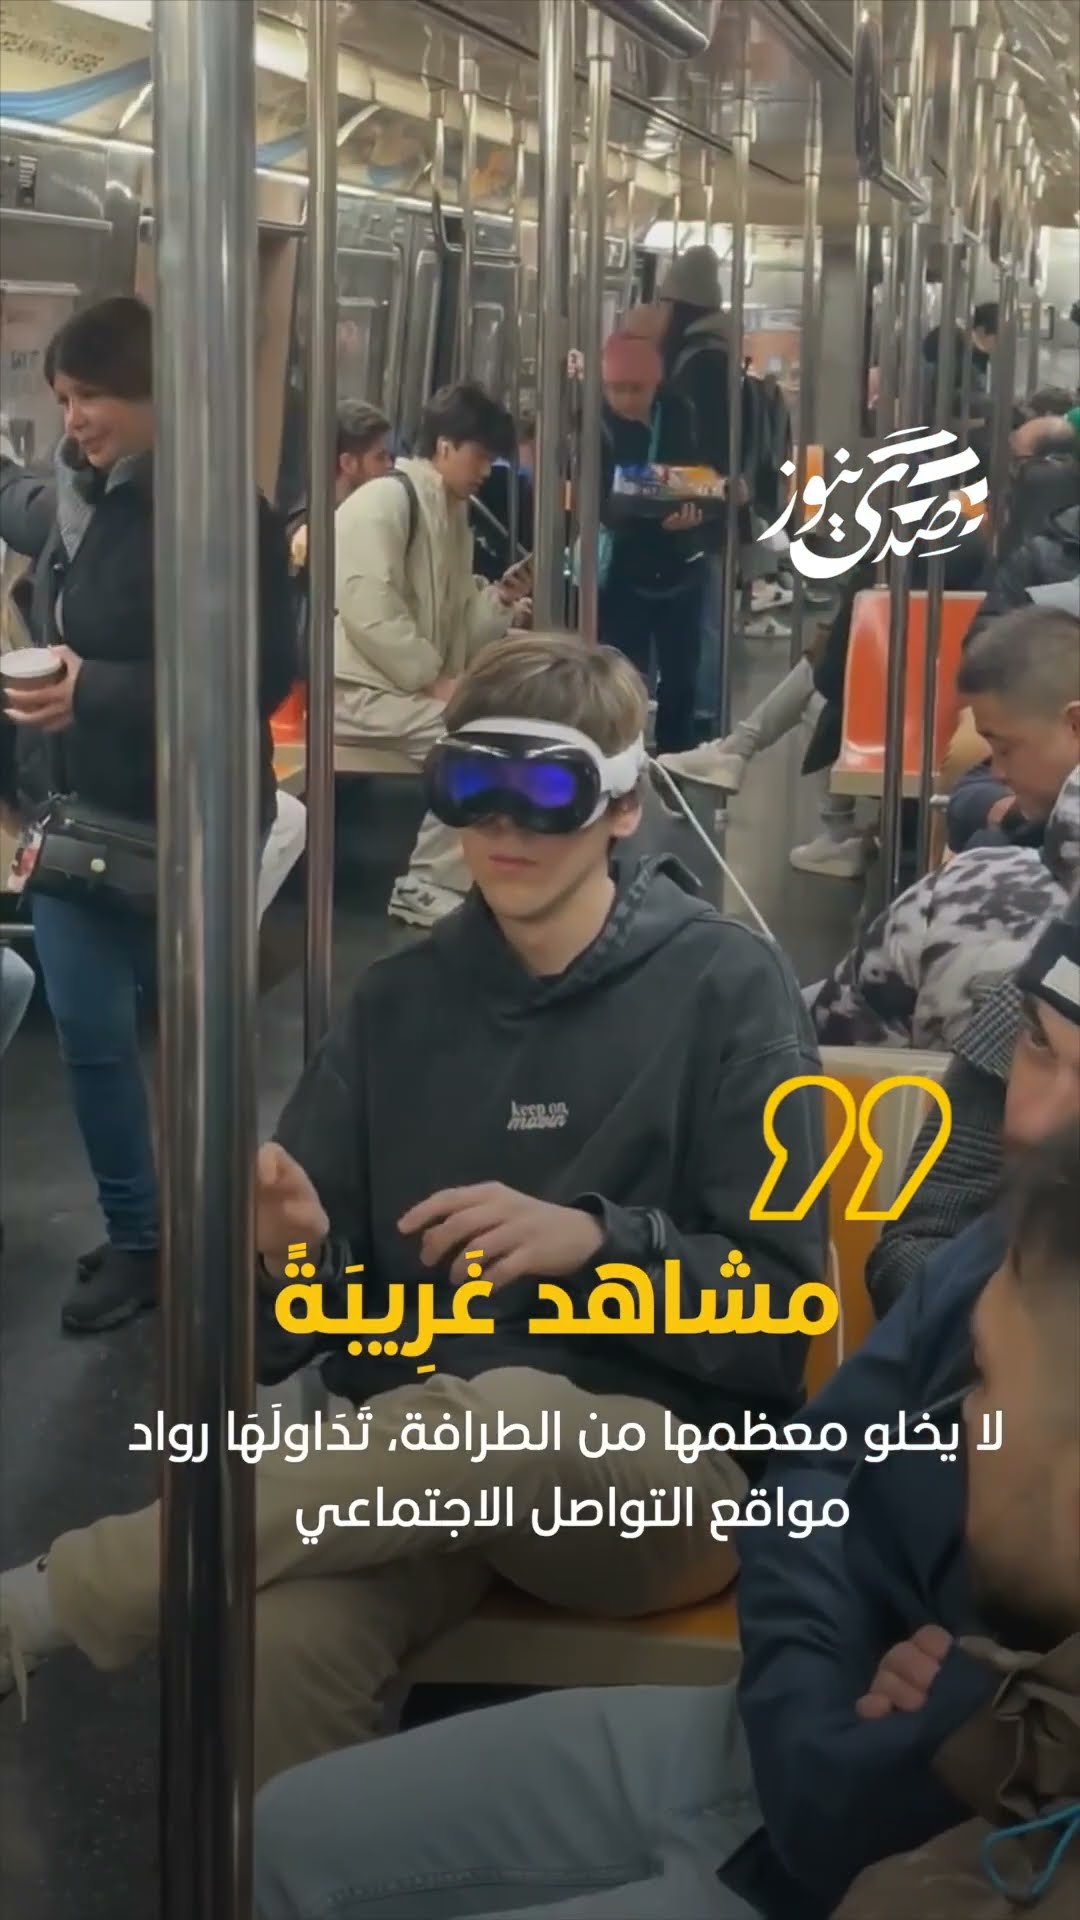 صدى نيوز | مرتدو نظارة الواقع المختلط يصدمون المارة بتصرفات غريبة بالشوارع